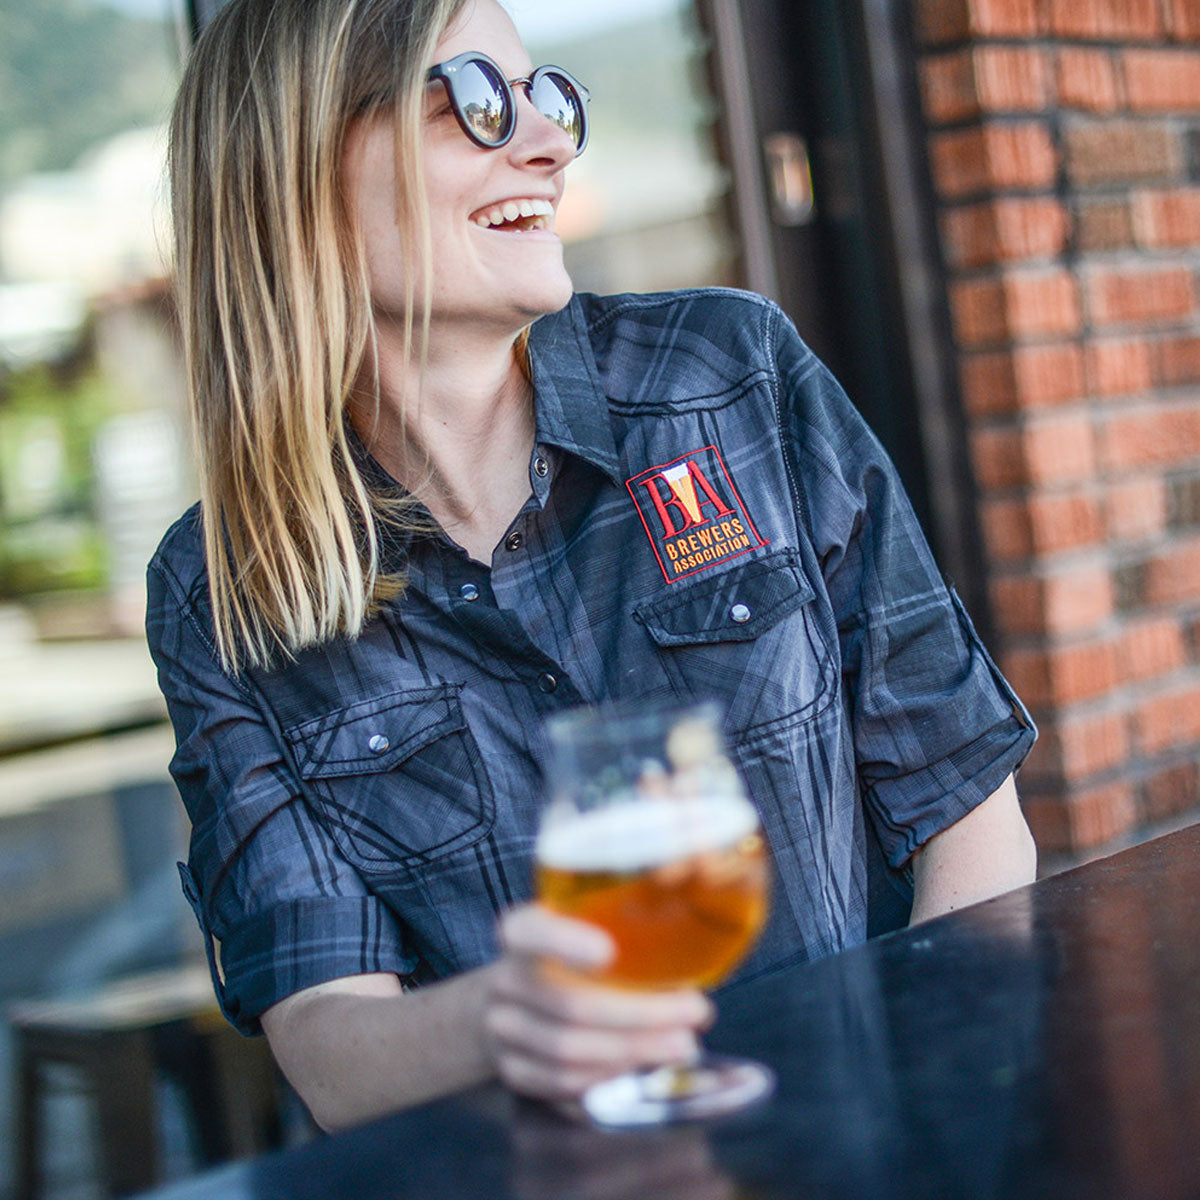 women brewers shirt